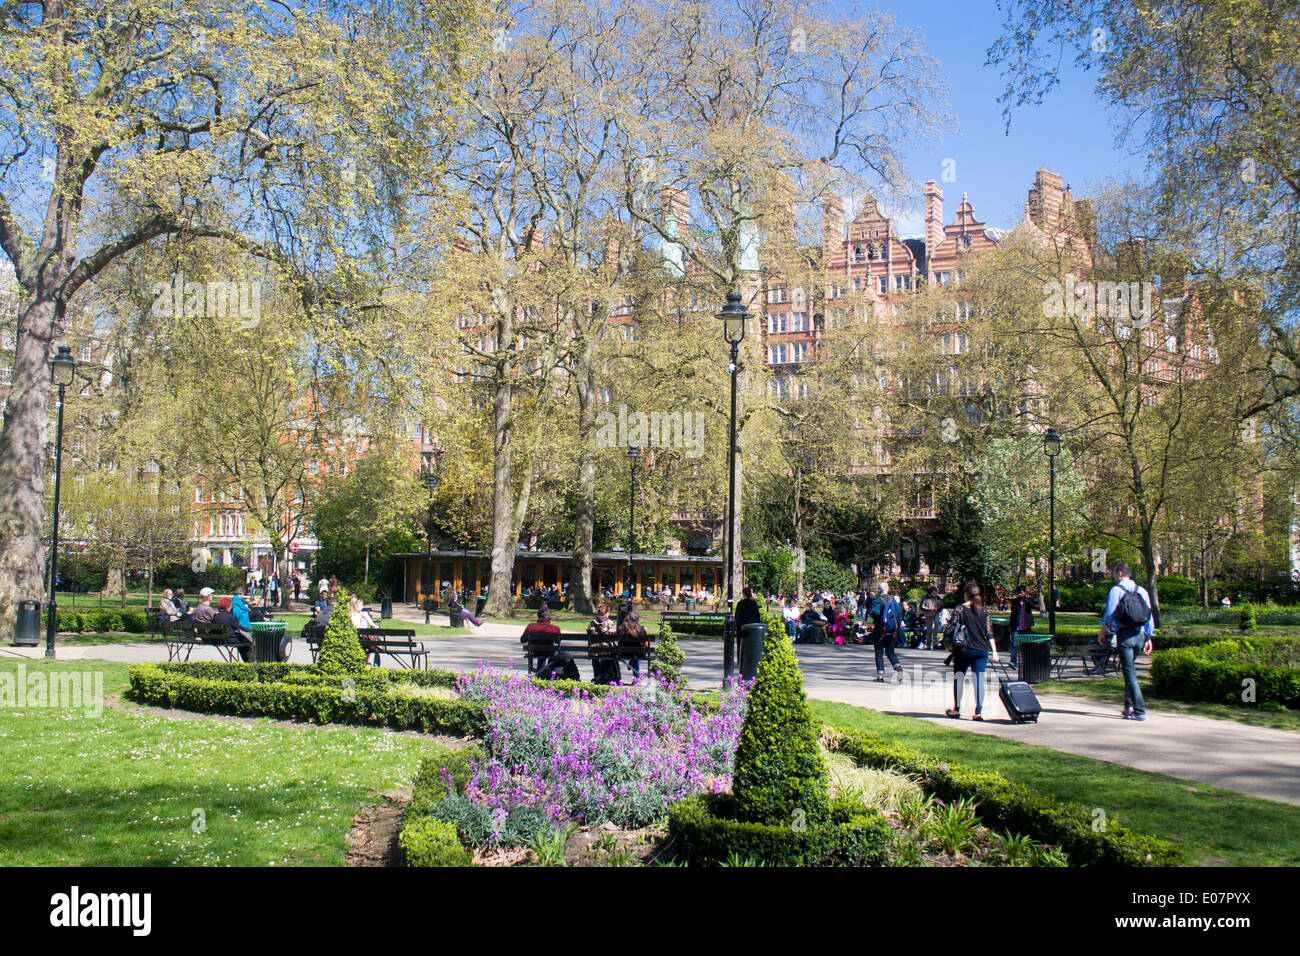 Russell Square au printemps avec des gens assis, marcher, se détendre avec fleurs violettes en premier plan Bloomsbury Londres Angleterre Royaume-uni Banque D'Images